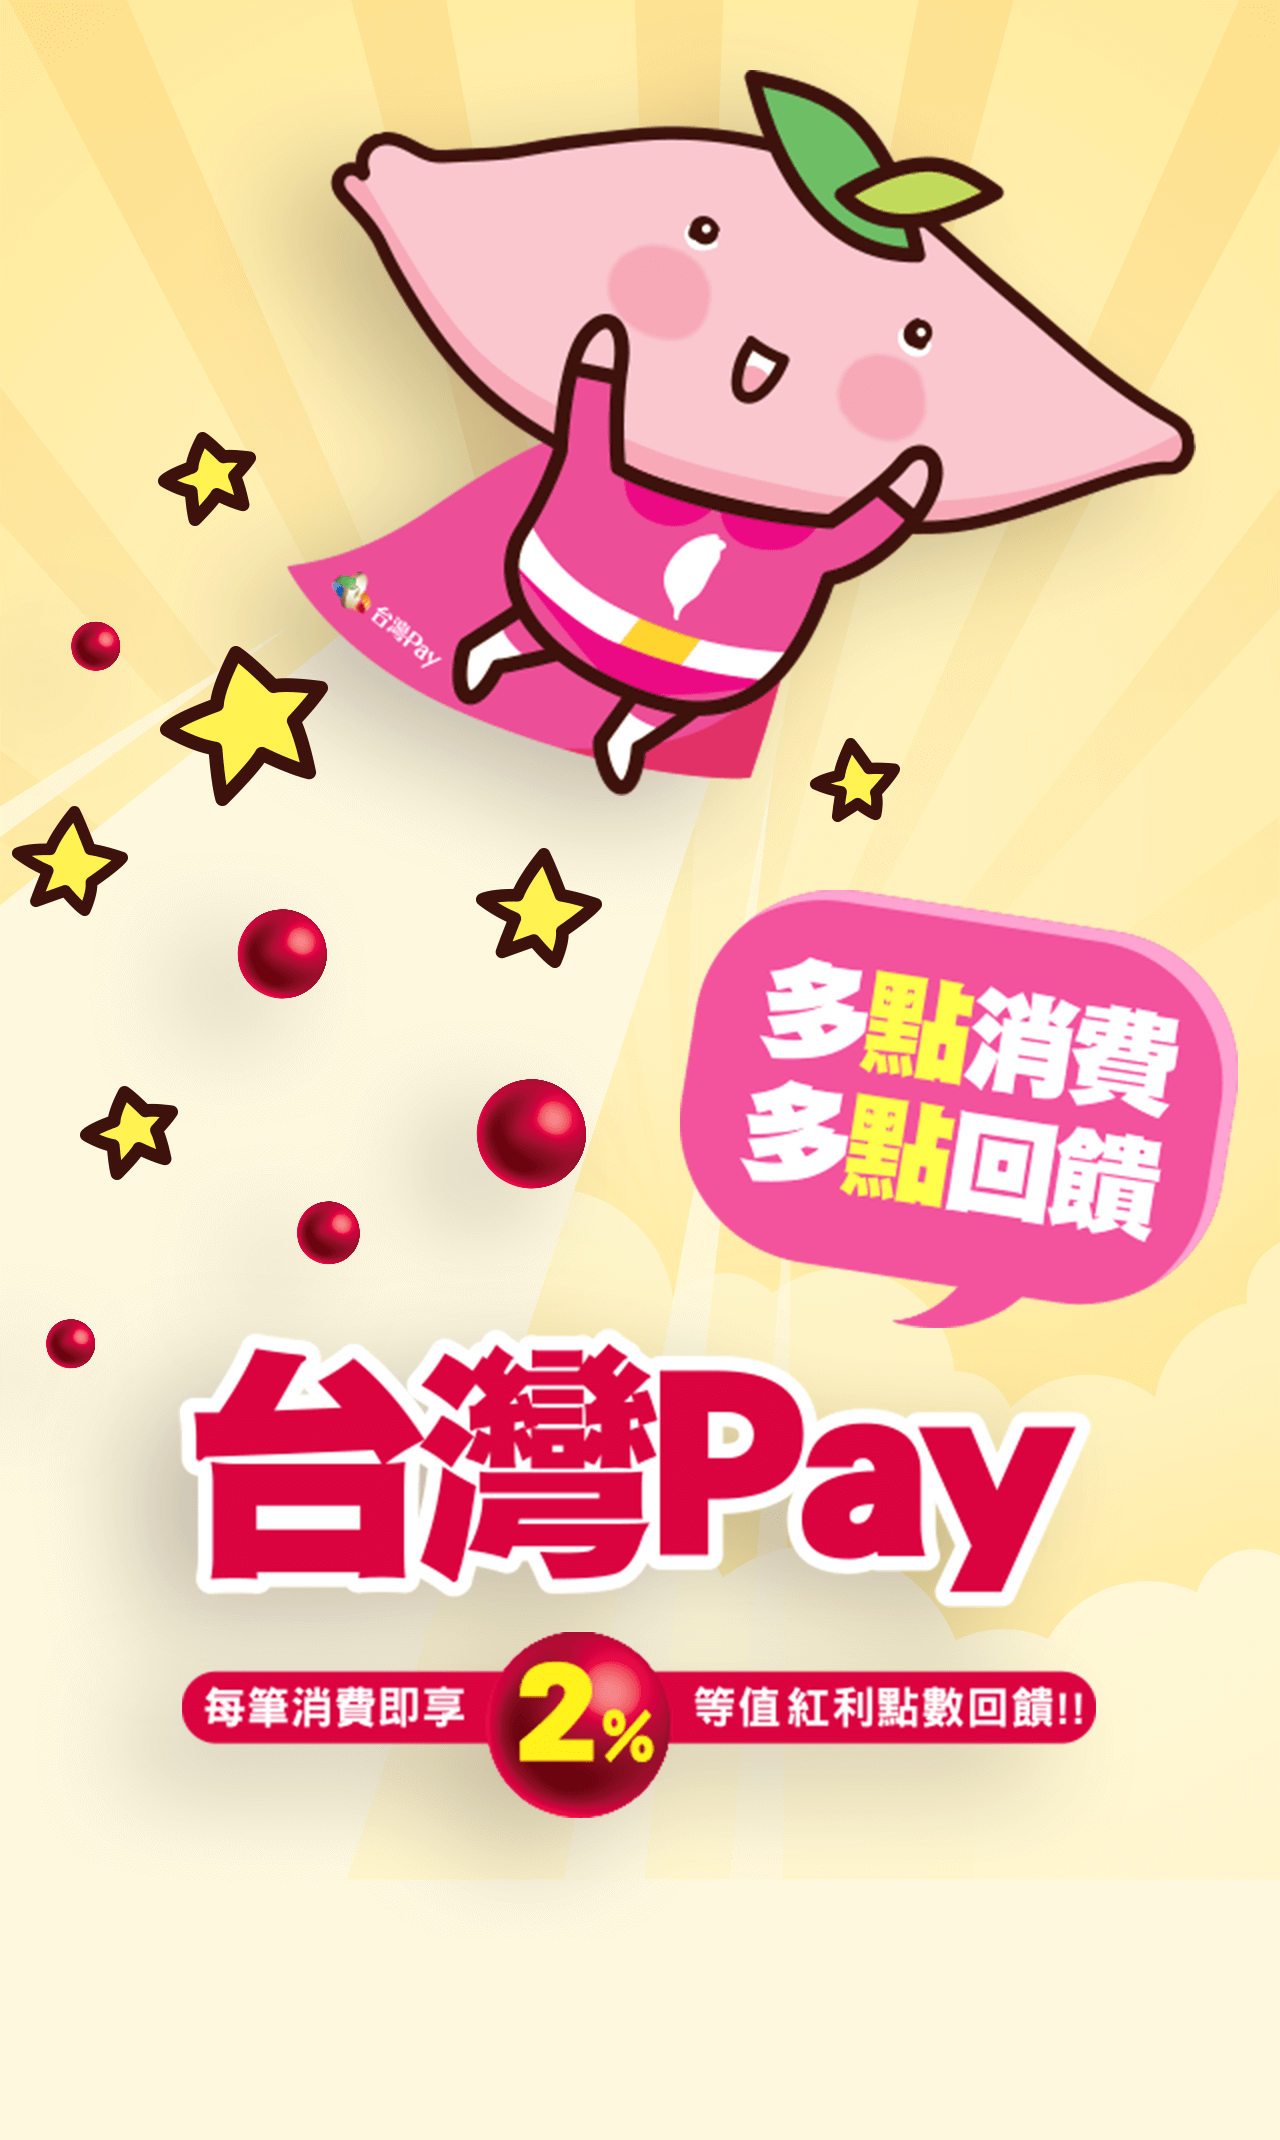 宣傳圖片，說明使用台灣Pay每筆消費即享2%等值紅利點數回饋